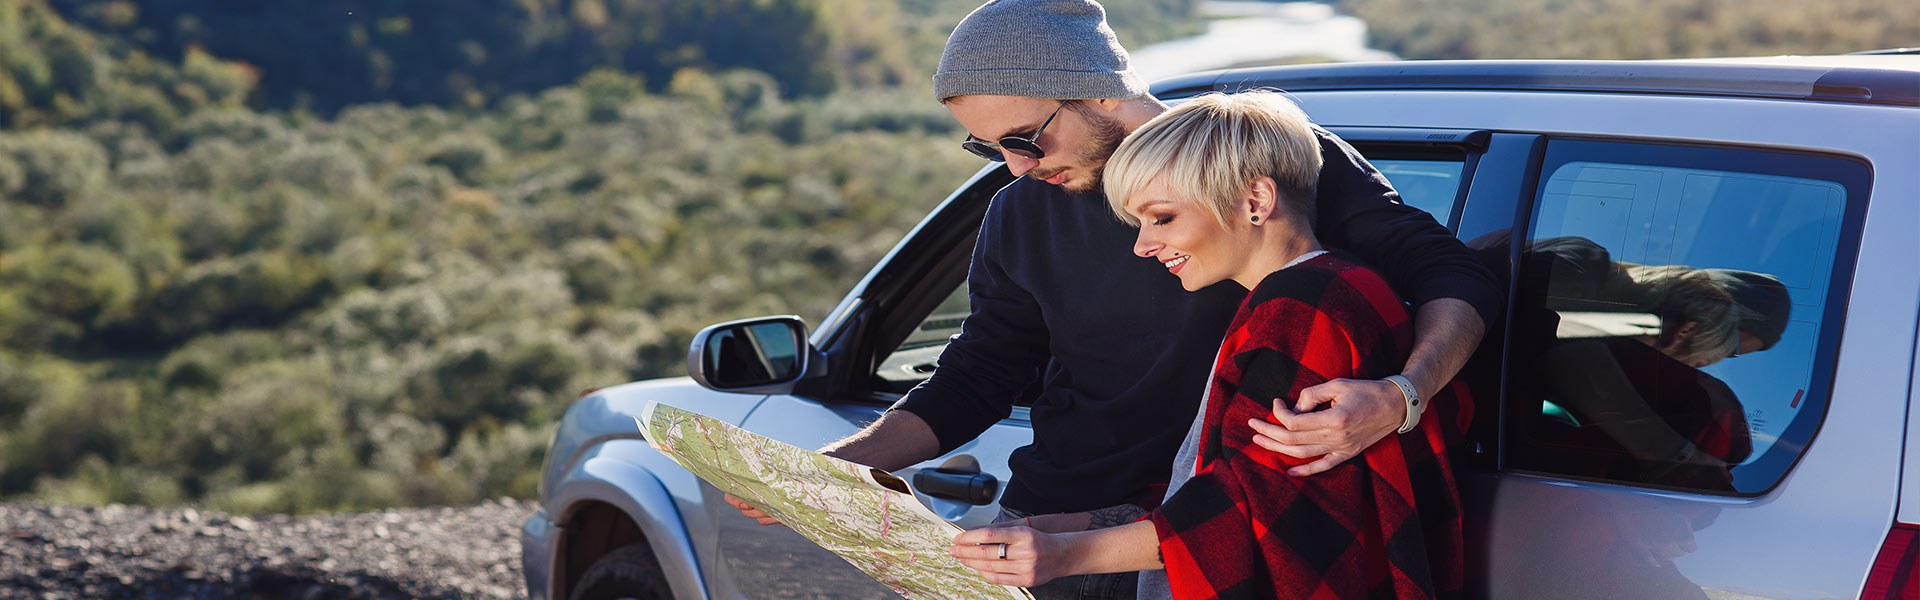 Blog | Iznajmljivanje SUV-a idealno rešenje za vaše putovanje